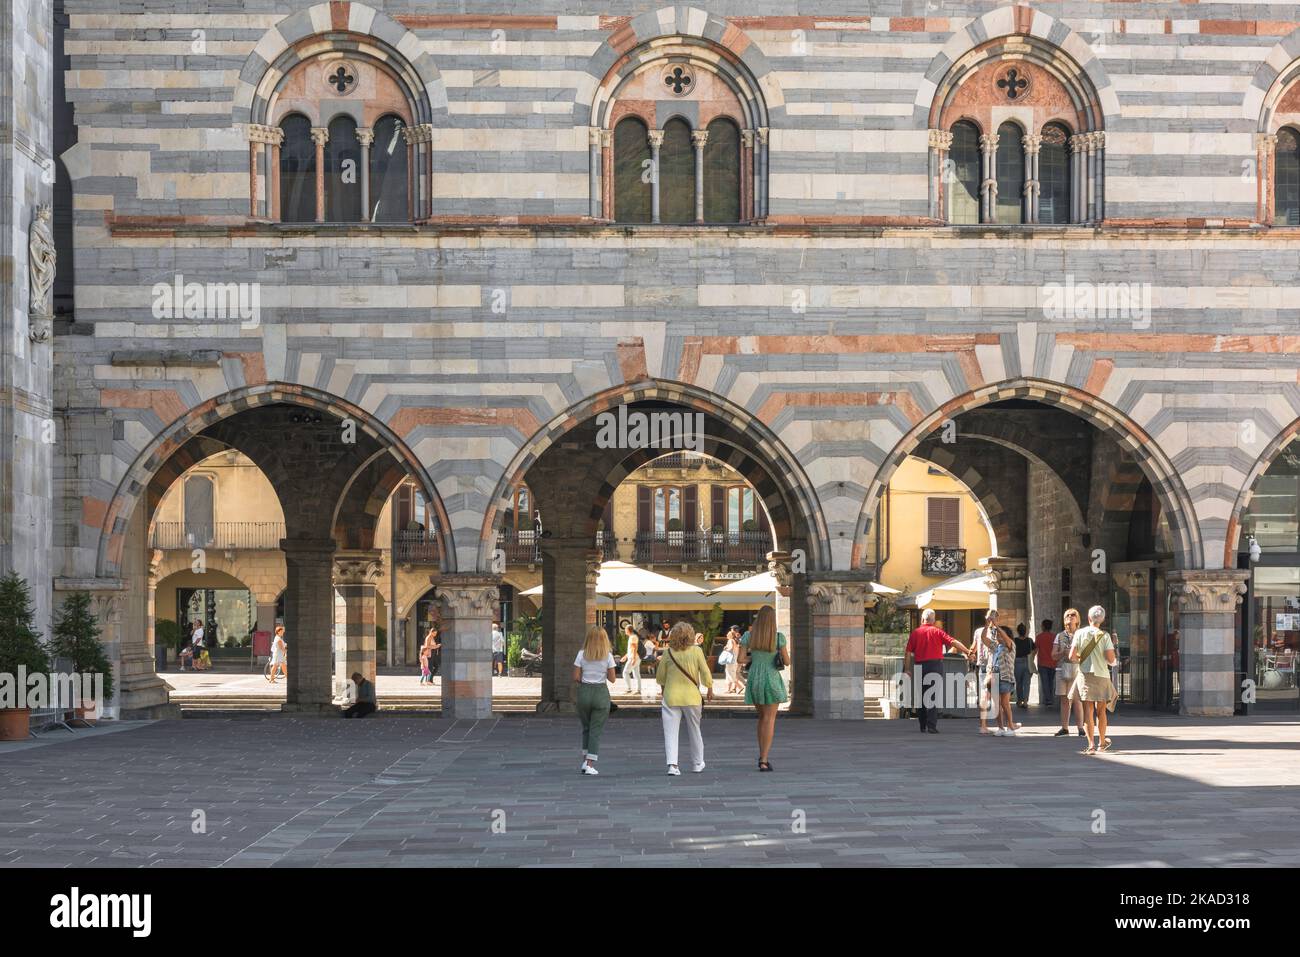 Italie ville Renaissance, vue sur les arches du Broletto, ancien tribunal de la Renaissance dans le centre historique de la ville de Côme, Italie Banque D'Images